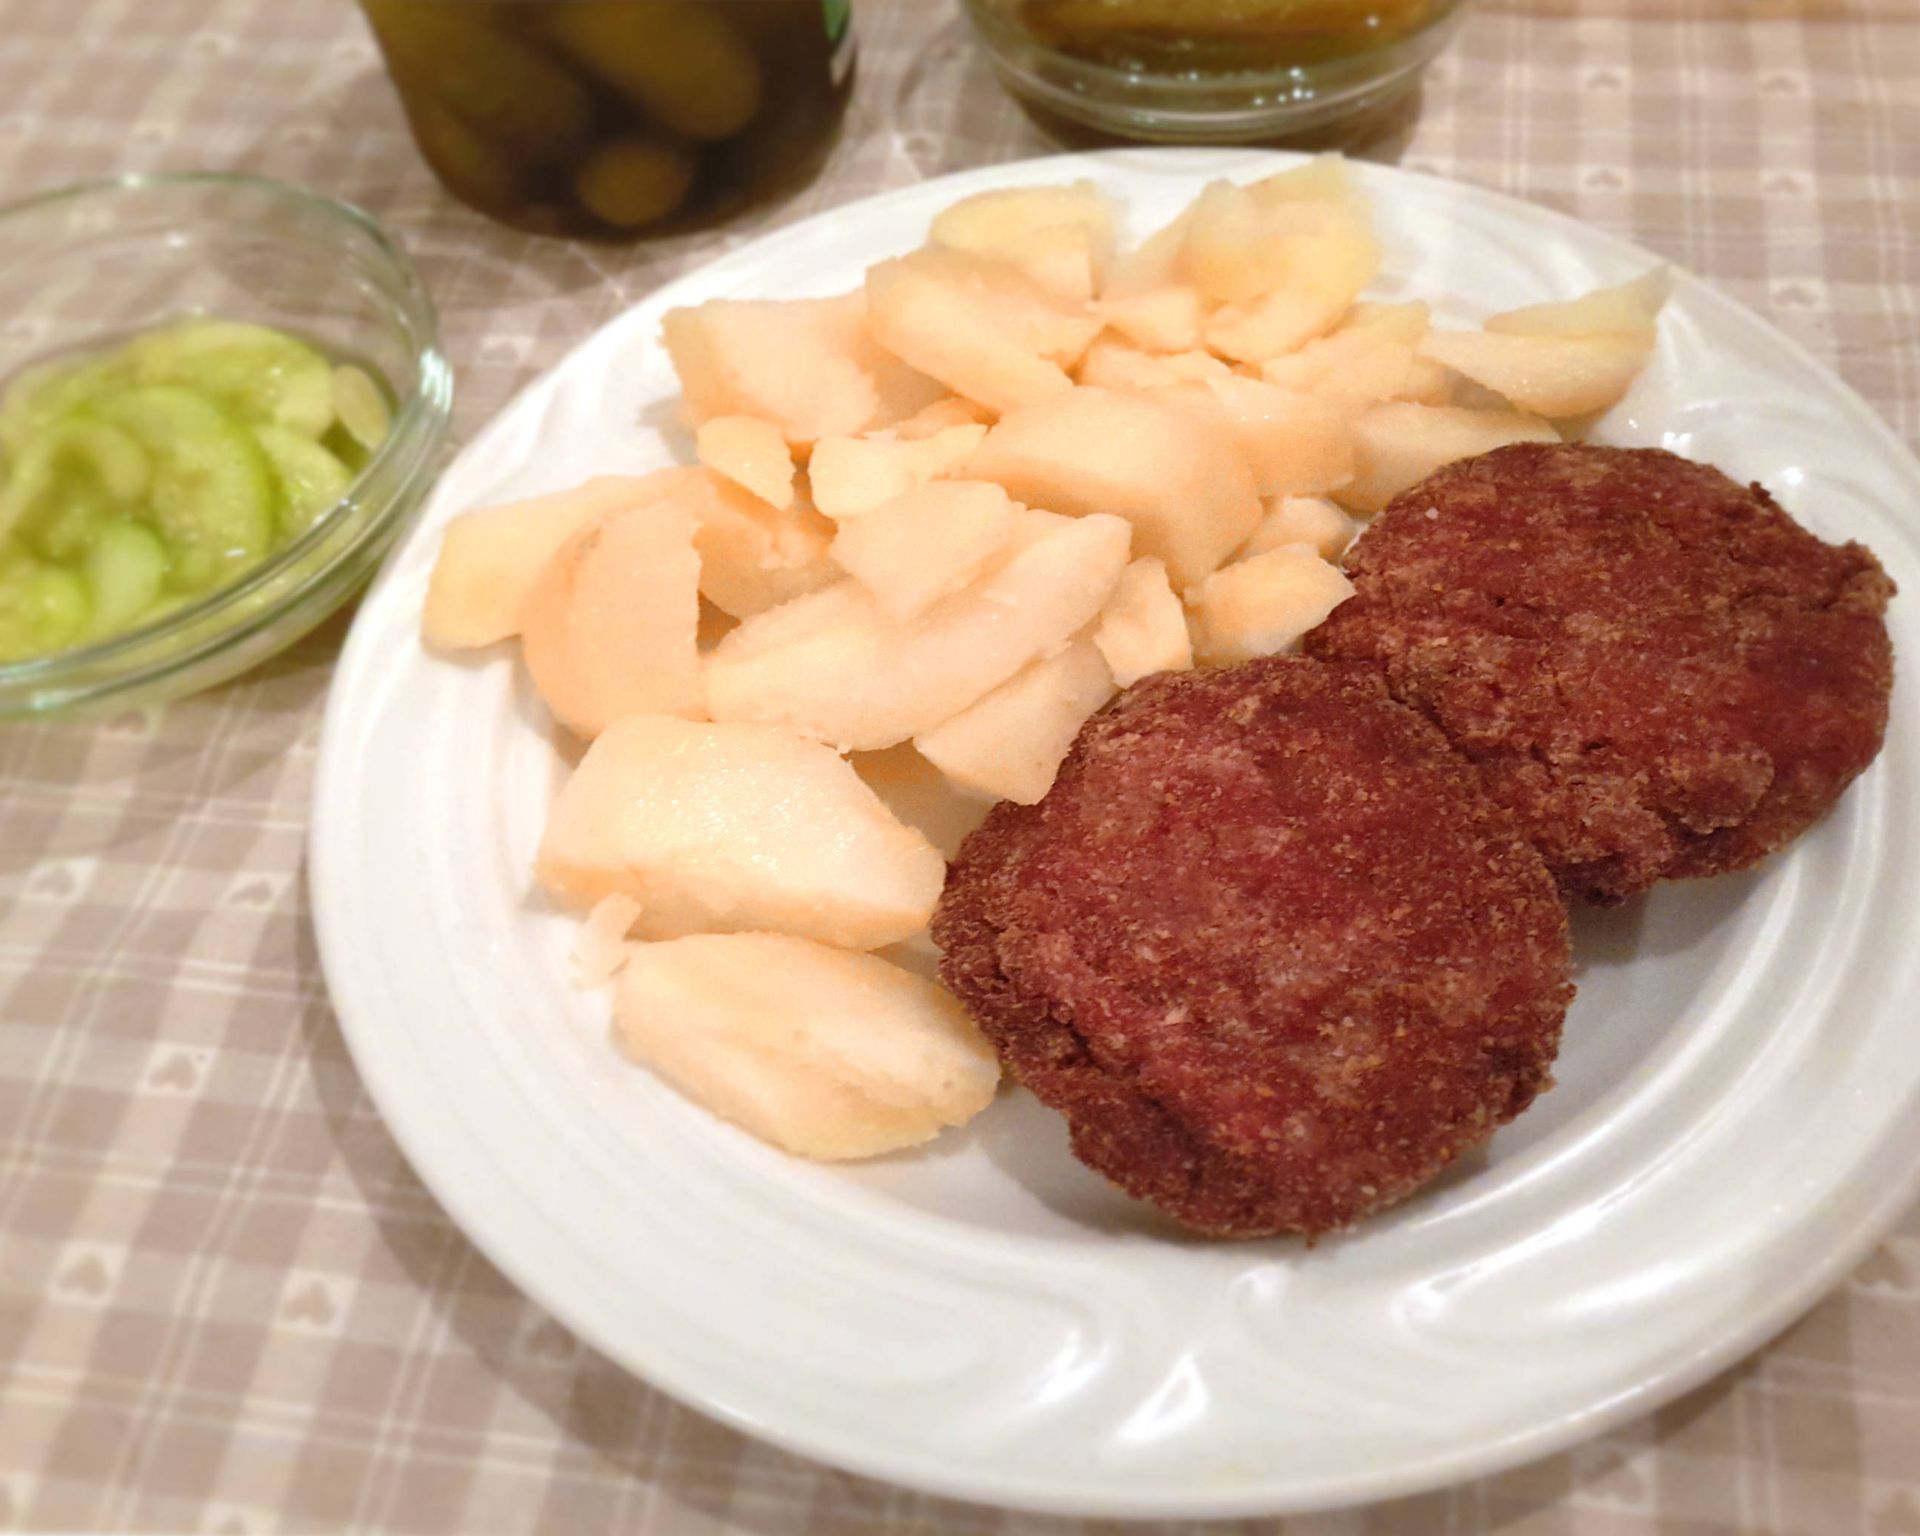 Karbonátky z mäsa plus varené zemiaky na bielom plytkom tanieri, v pozadí uhorkový šalát v miske a uhorky.